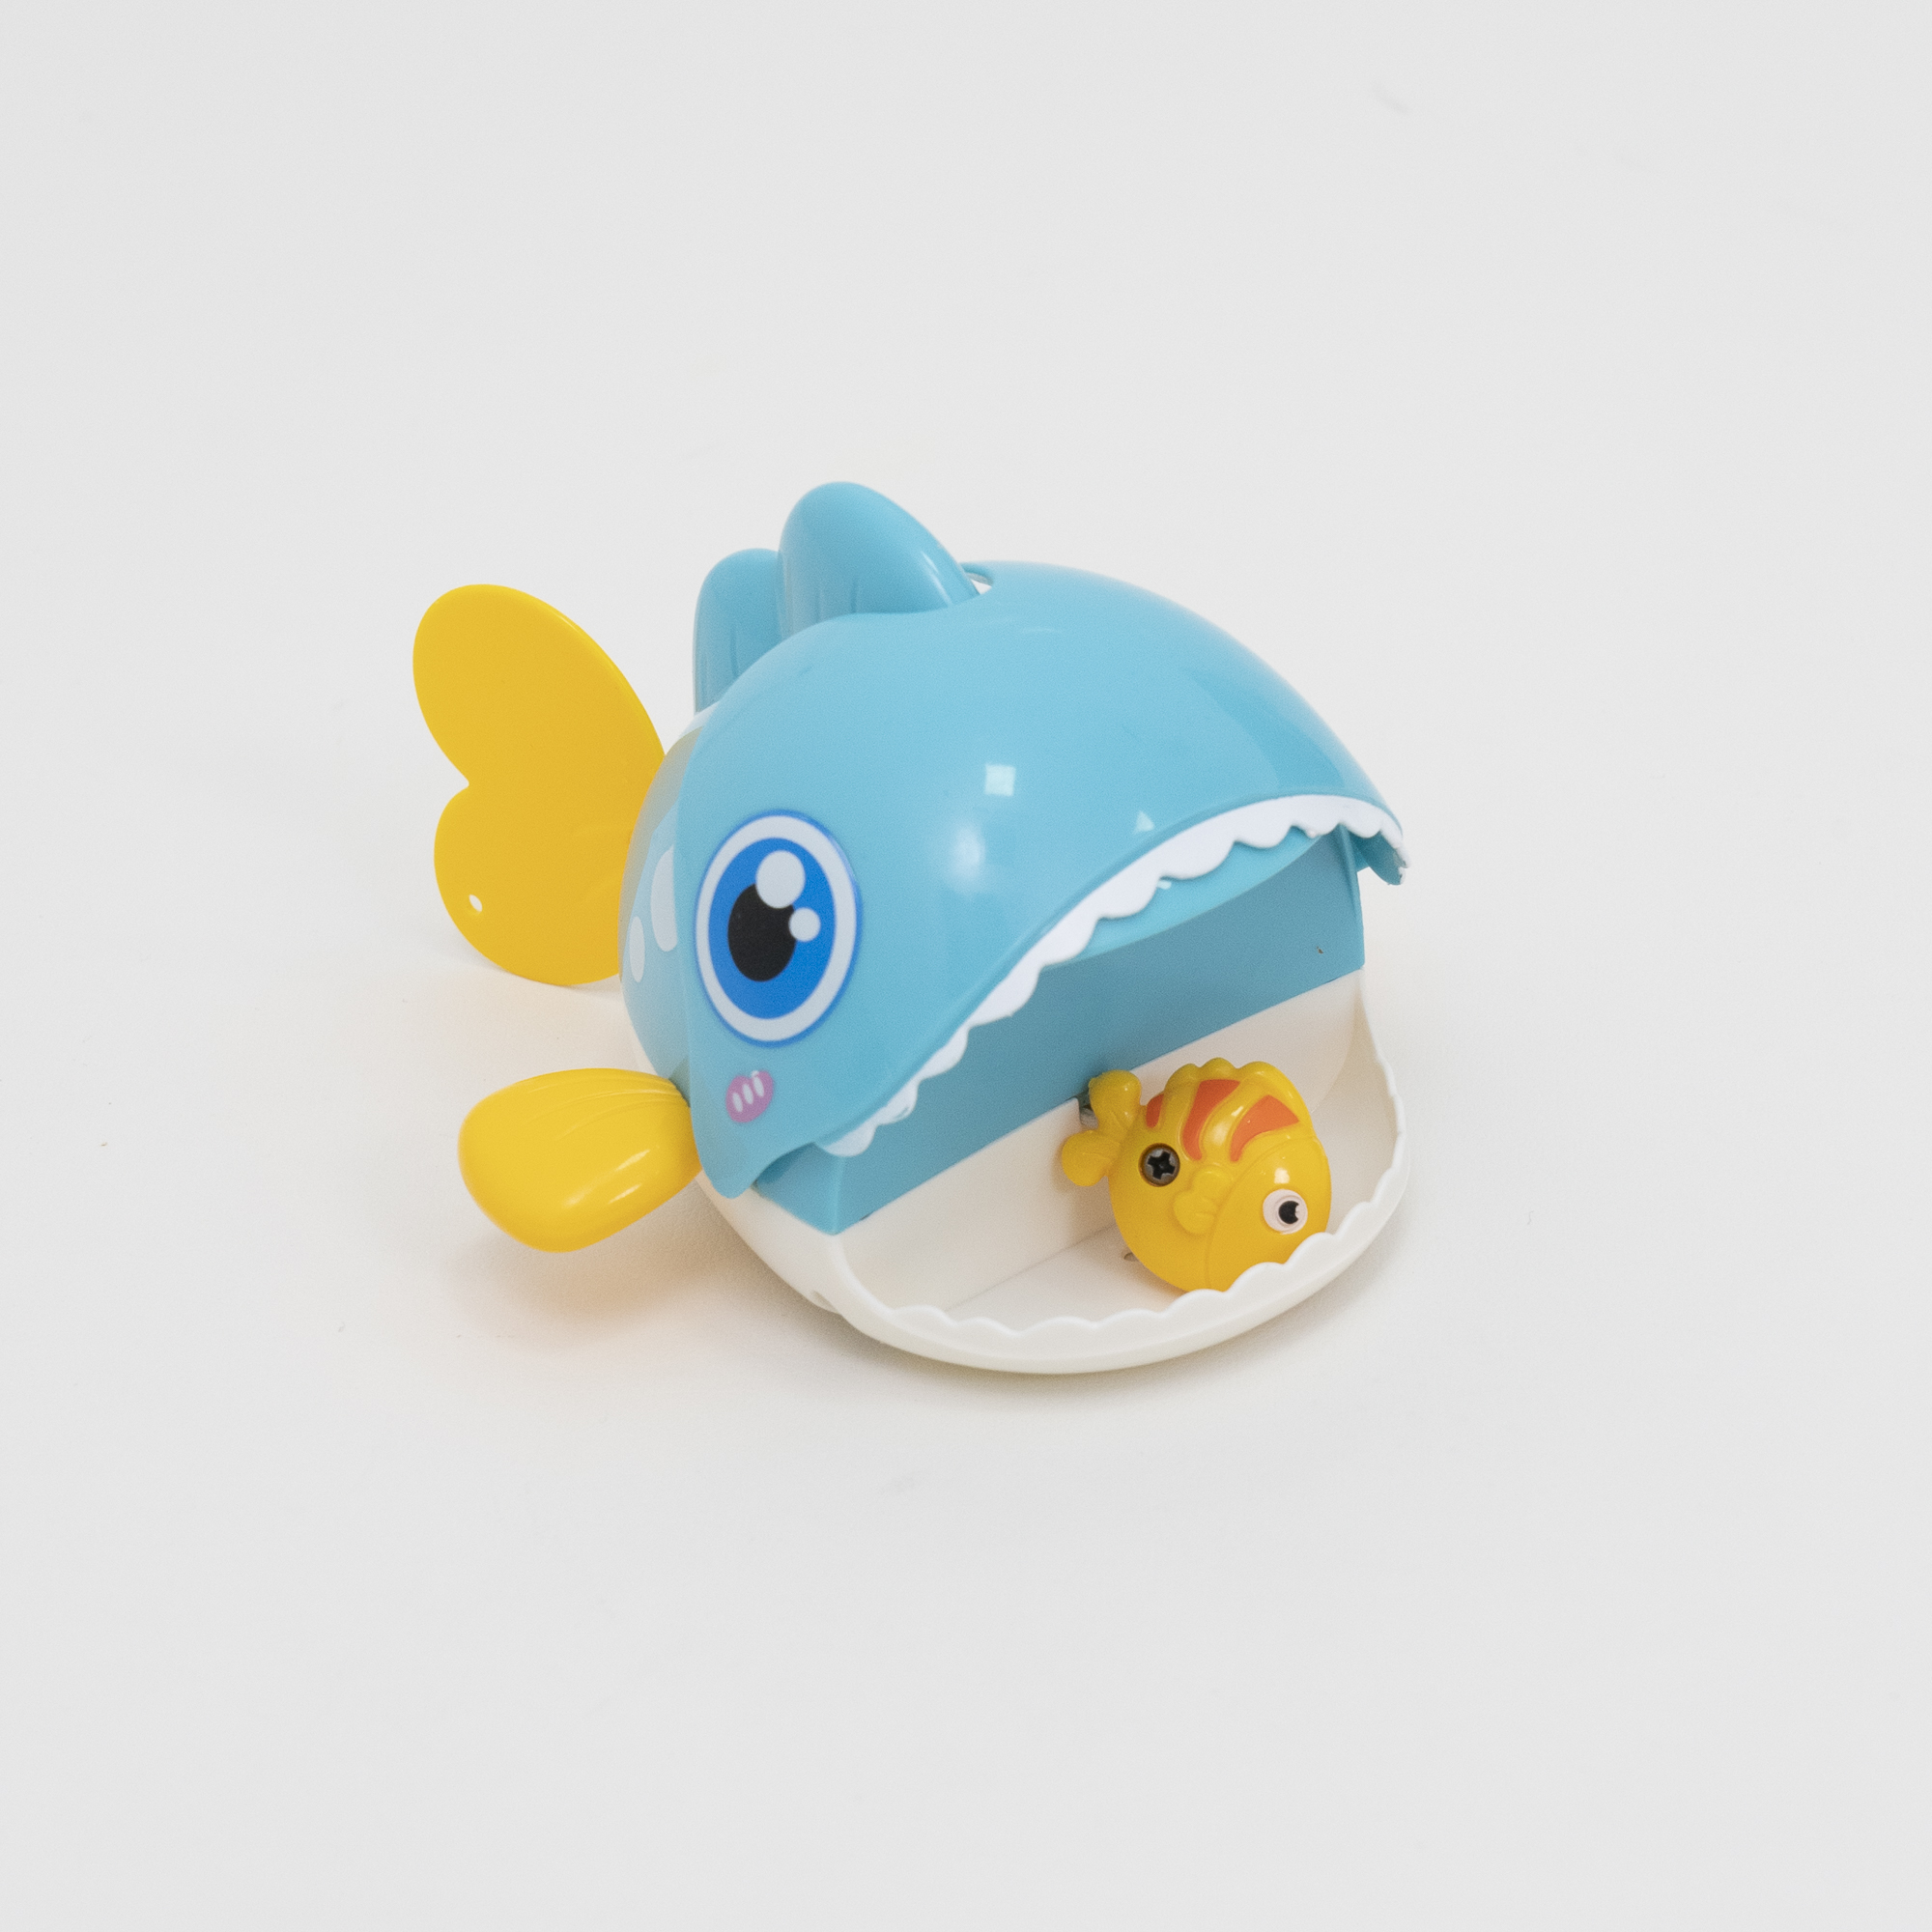 『人気おもちゃ』お風呂おもちゃBig fish eats small fish｜明るい色と特別な形は赤ちゃんの感覚を刺激し、子供の手と目の協調を発達させる|undefined